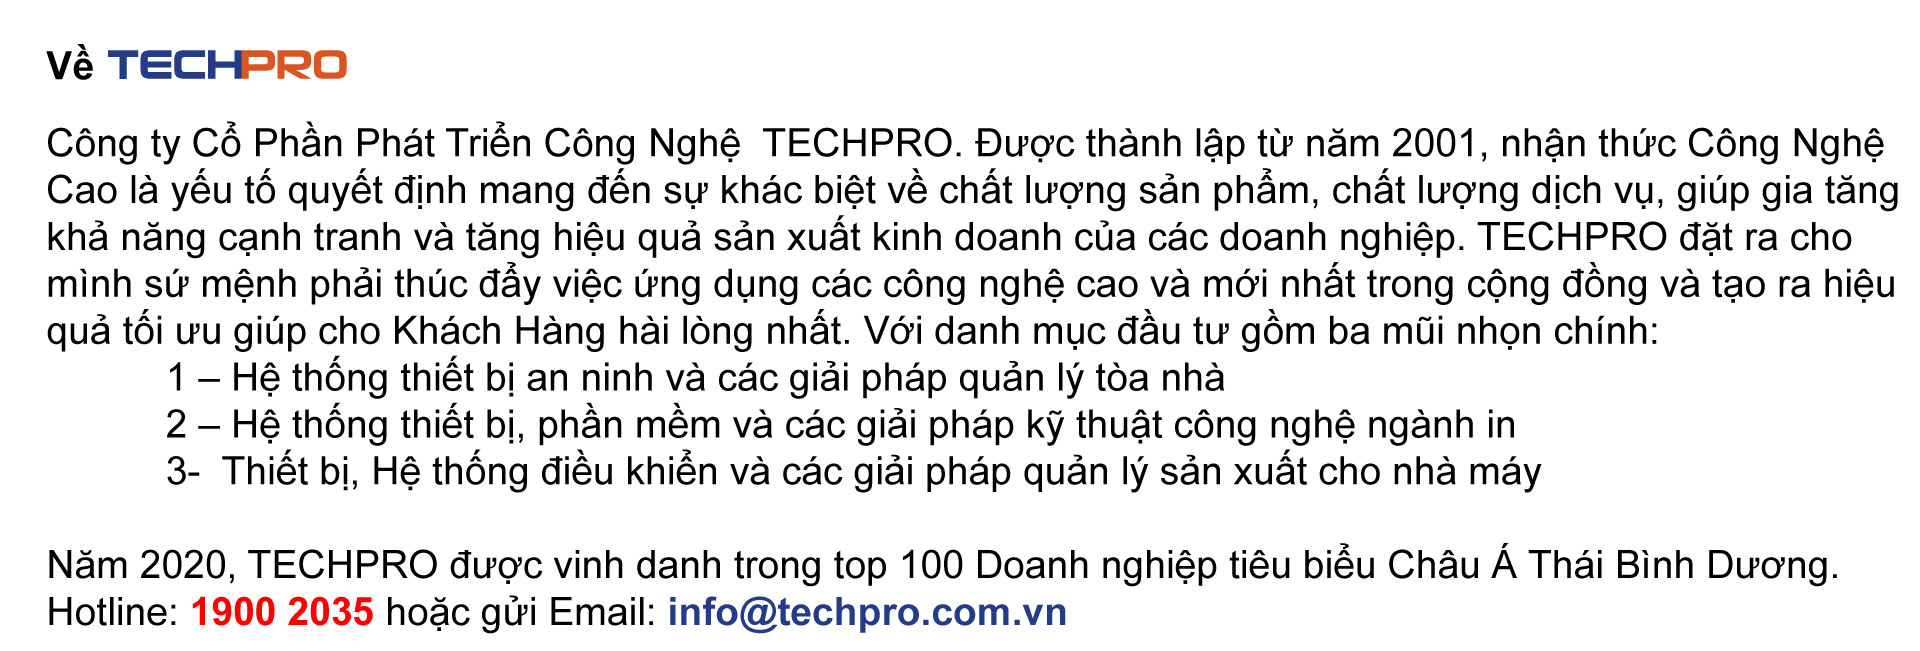 giới thiệu về công ty TECHPRO